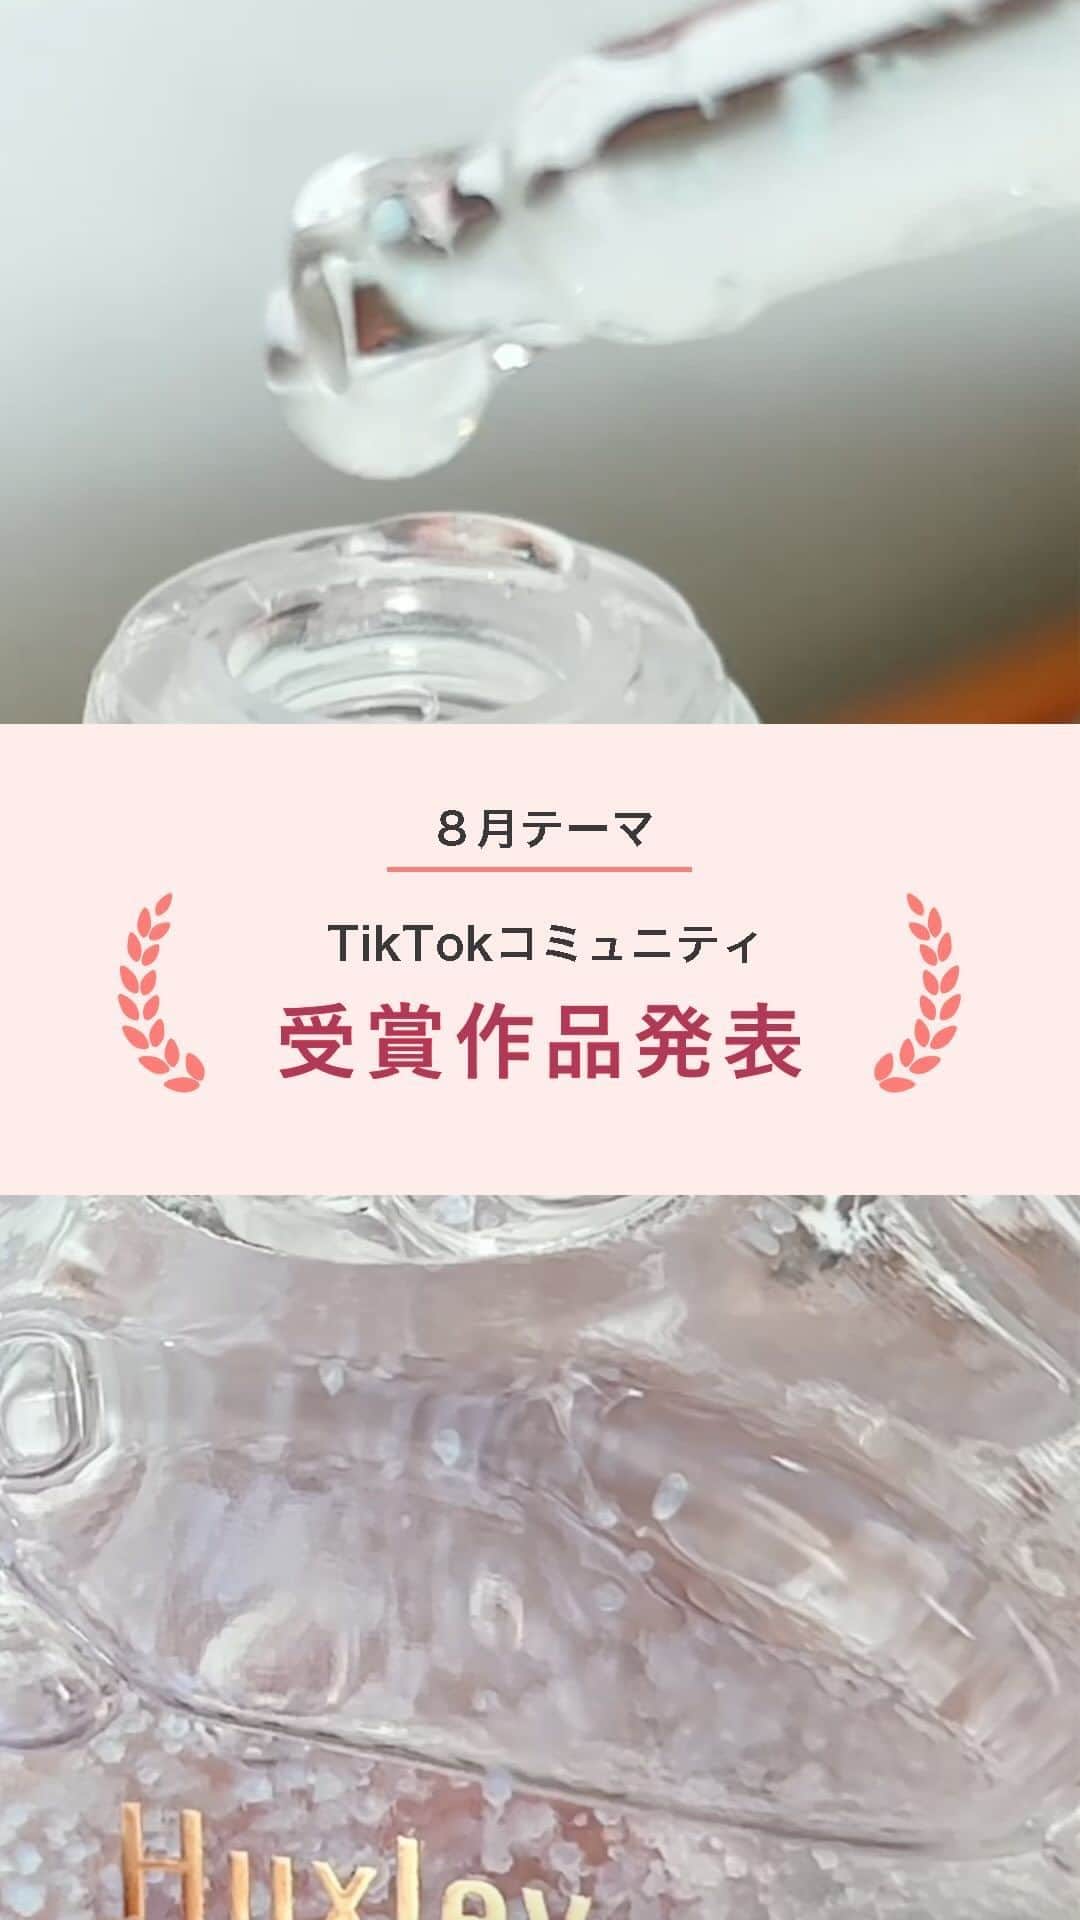 スマホの写真が売れちゃうアプリ「スナップマート」のインスタグラム：「@snapmart.jp←過去の動画受賞作品はリール動画からチェックしてね。  【TikTok研究コミュニティ3期生 8月動画テーマ「美容」】  7月から活動を開始したSnapmart TikTok研究コミュニティ3期生。今回は54名の方に参加していただいており、月に1度のテーマに合わせて動画を作っていただいています。  第2回目となる8月の動画テーマは「美容」。  スキンケア商品やコスメ・ネイル、ポップアップイベントなど、美容にまつわる多彩な動画が集まりました！ 今回はそんな応募作品の中から、優秀作品を発表します✨  美容はアンバサダーの中でも特に商品数が多いジャンルなので、アンバサダーの動画制作の参考にもなるはず。 ぜひ作品を見てご自身の動画制作の参考にしてみてくださいね。  👑まとこさん( @natu__mtk )  【工夫したポイント】 単品紹介で、かつスキンケア、見た目は可愛いので、普段はやらないパッケージスタートにしてみました。  【スナップマートからのコメント】 「見た目だけじゃないの？」という商品を見た人が感じそうなことから、動画に引き込むのが素晴らしい！商品のテクスチャーや、肌に塗った時の様子も入れてくれている点も、わかりやすくて良いです。  ＊＊＊  スナップマートでは、動画で商品の魅力を伝える「動画アンバサダー」や動画コンテストを定期的に実施しております。 TikTokやインスタグラムのリールで発信している方が活躍できる場となりますので、ぜひクリエイター登録してくださいね。  クリエイター登録は、@snapmart.jp のプロフィールリンクからアプリをダウンロード！ みんなでクリエイティブのスキルアップを目指そう✨  ＊＊＊   #snapmart  #スナップマート   #カメラ練習中 #カメラ練習中🔰 #写真練習中 #写真うまくなりたい #商品撮影 #ショート動画 #ショートムービー #動画 #動画練習 #コスメ #コスメレポ #コスメ大好き」